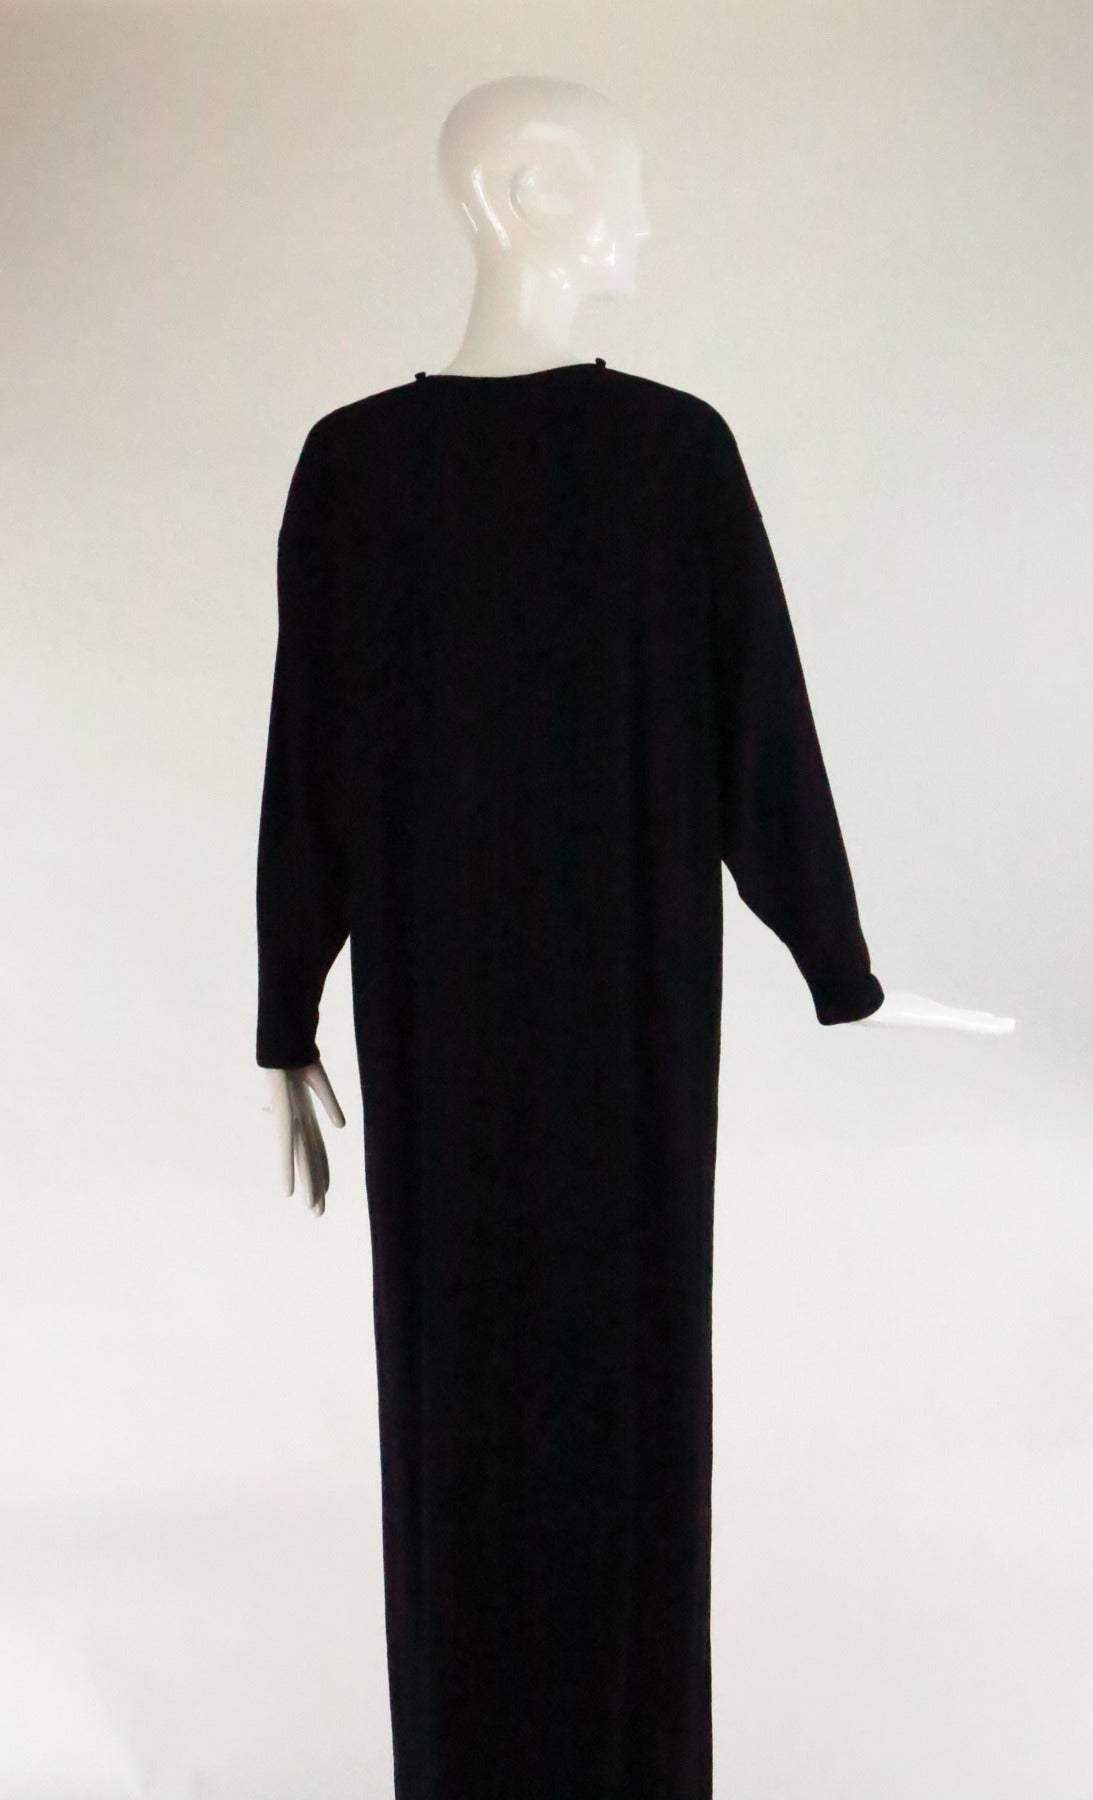 Women's 1970s Geoffrey Beene black fine wool knit maxi dress unworn